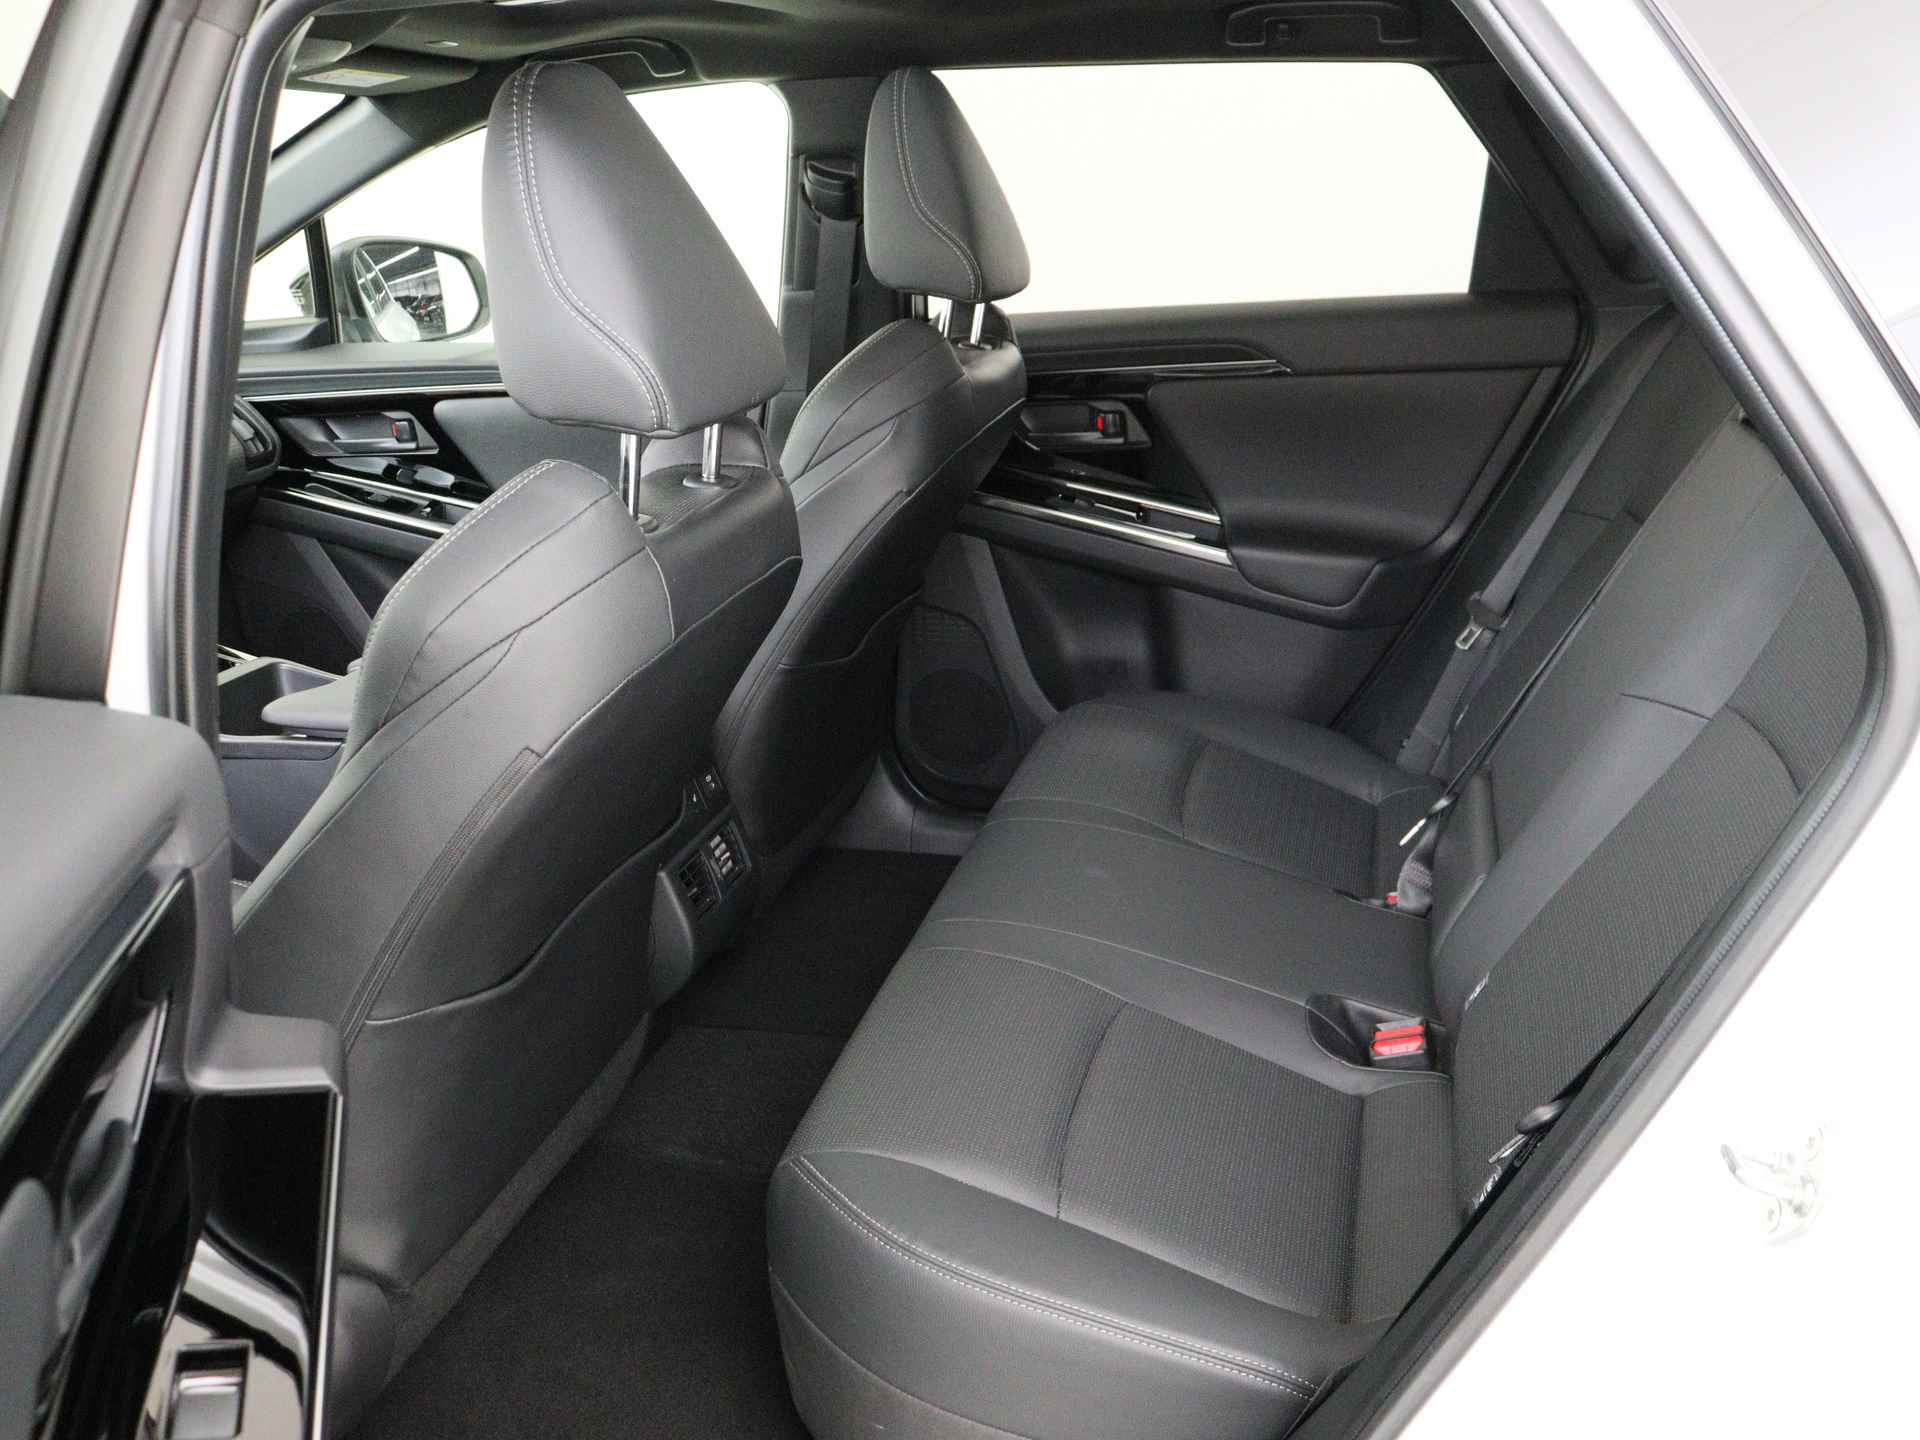 Toyota Bz4x Launch Edition Premium Bi-Tone uitvoering | Navigatie | Stoel&stuur verwarming | My T app | Panoramadak | Wegenbelasting vrij | Subsidie €2000,- aanvraag mogelijk. - 16/48